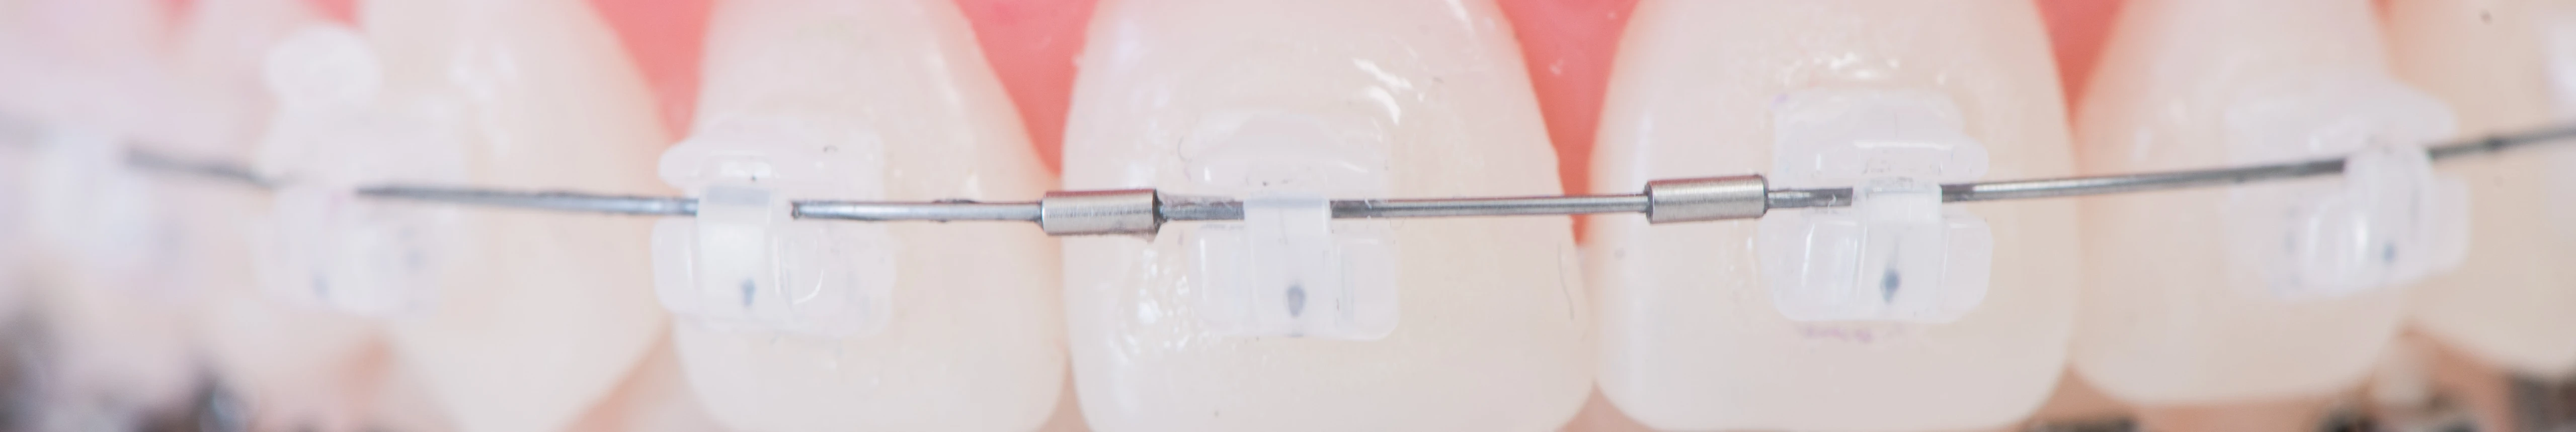 Orthodontie de l'adolescent : appareils de contention, appareils orthodontiques, gouttières transparentes